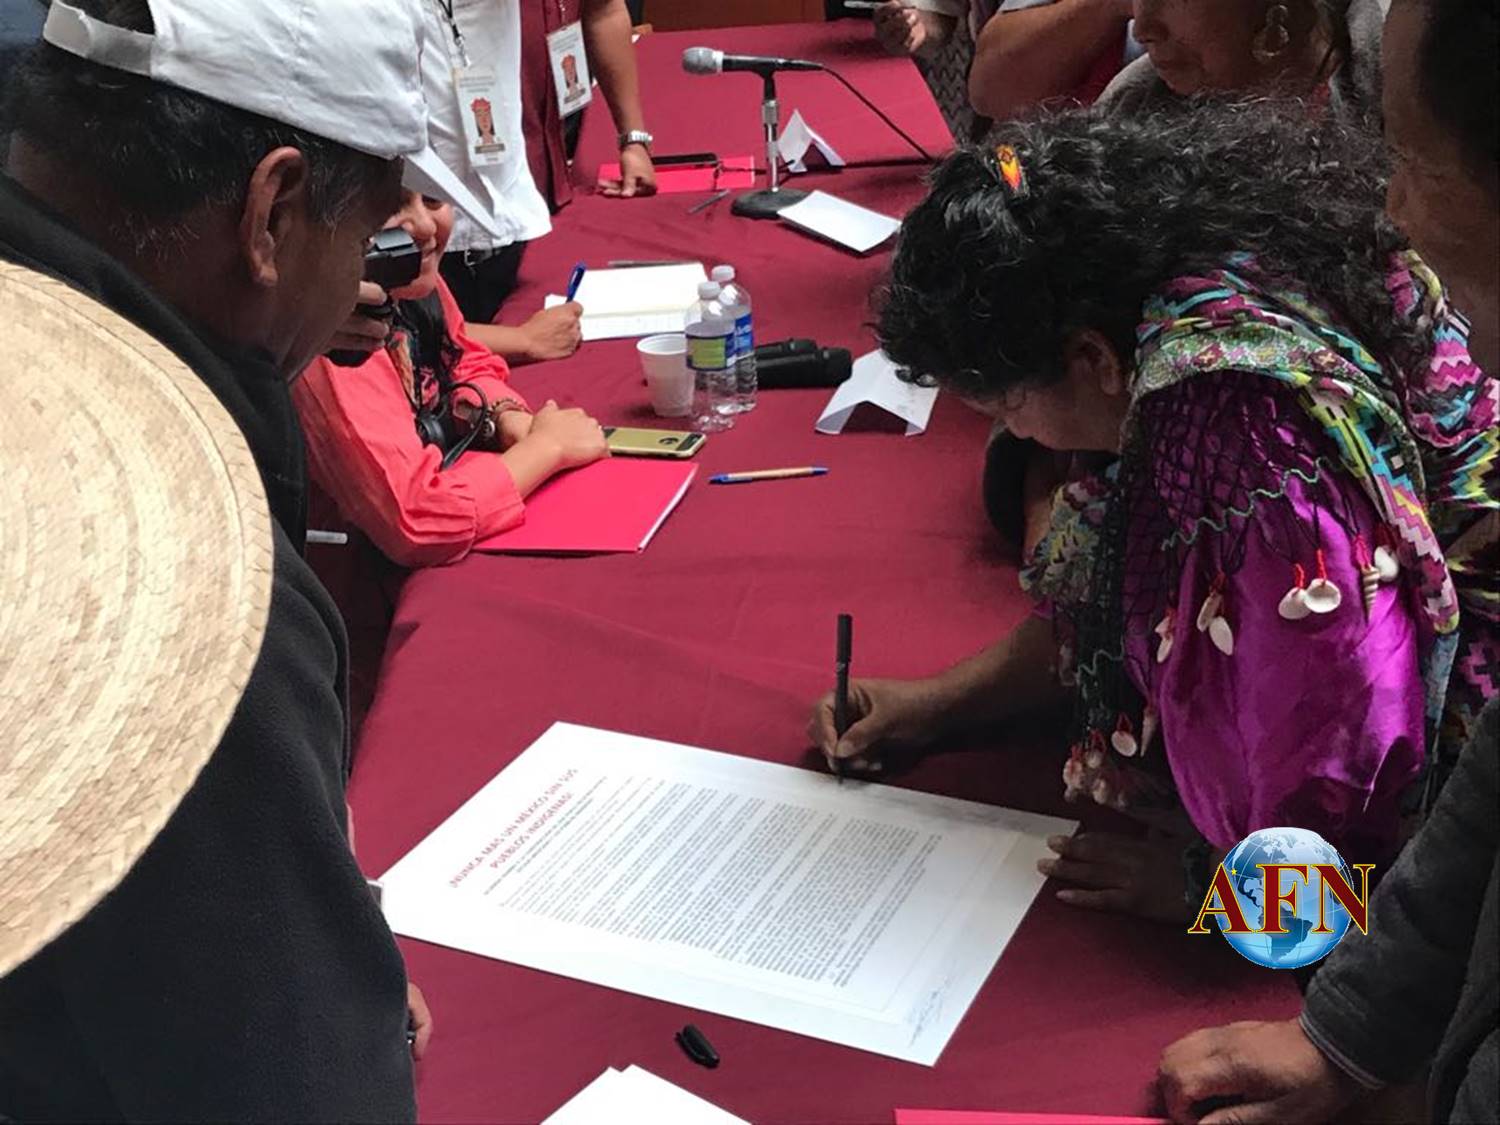 Acuerdos de Pueblos Indígenas se llevarán al Senado: Bonilla